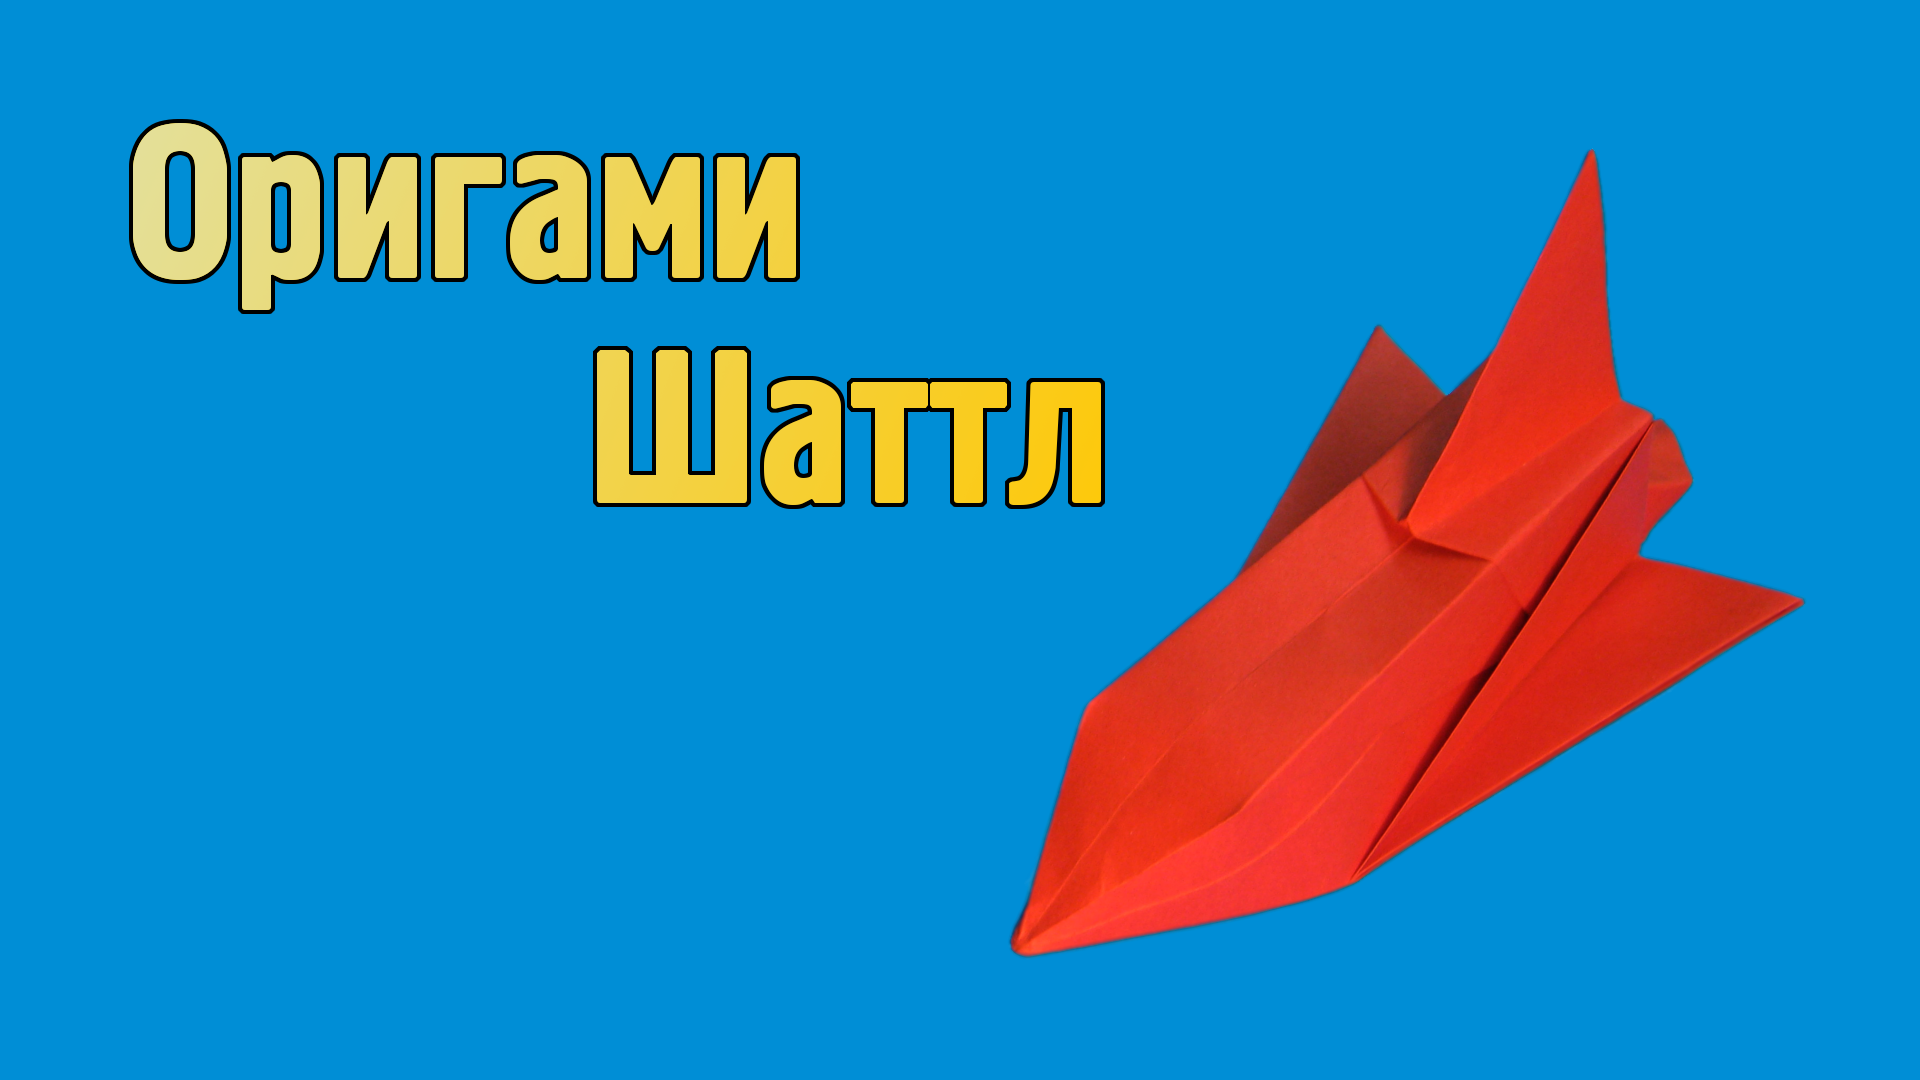 Ракета-оригами – 7 простых и доступных моделей